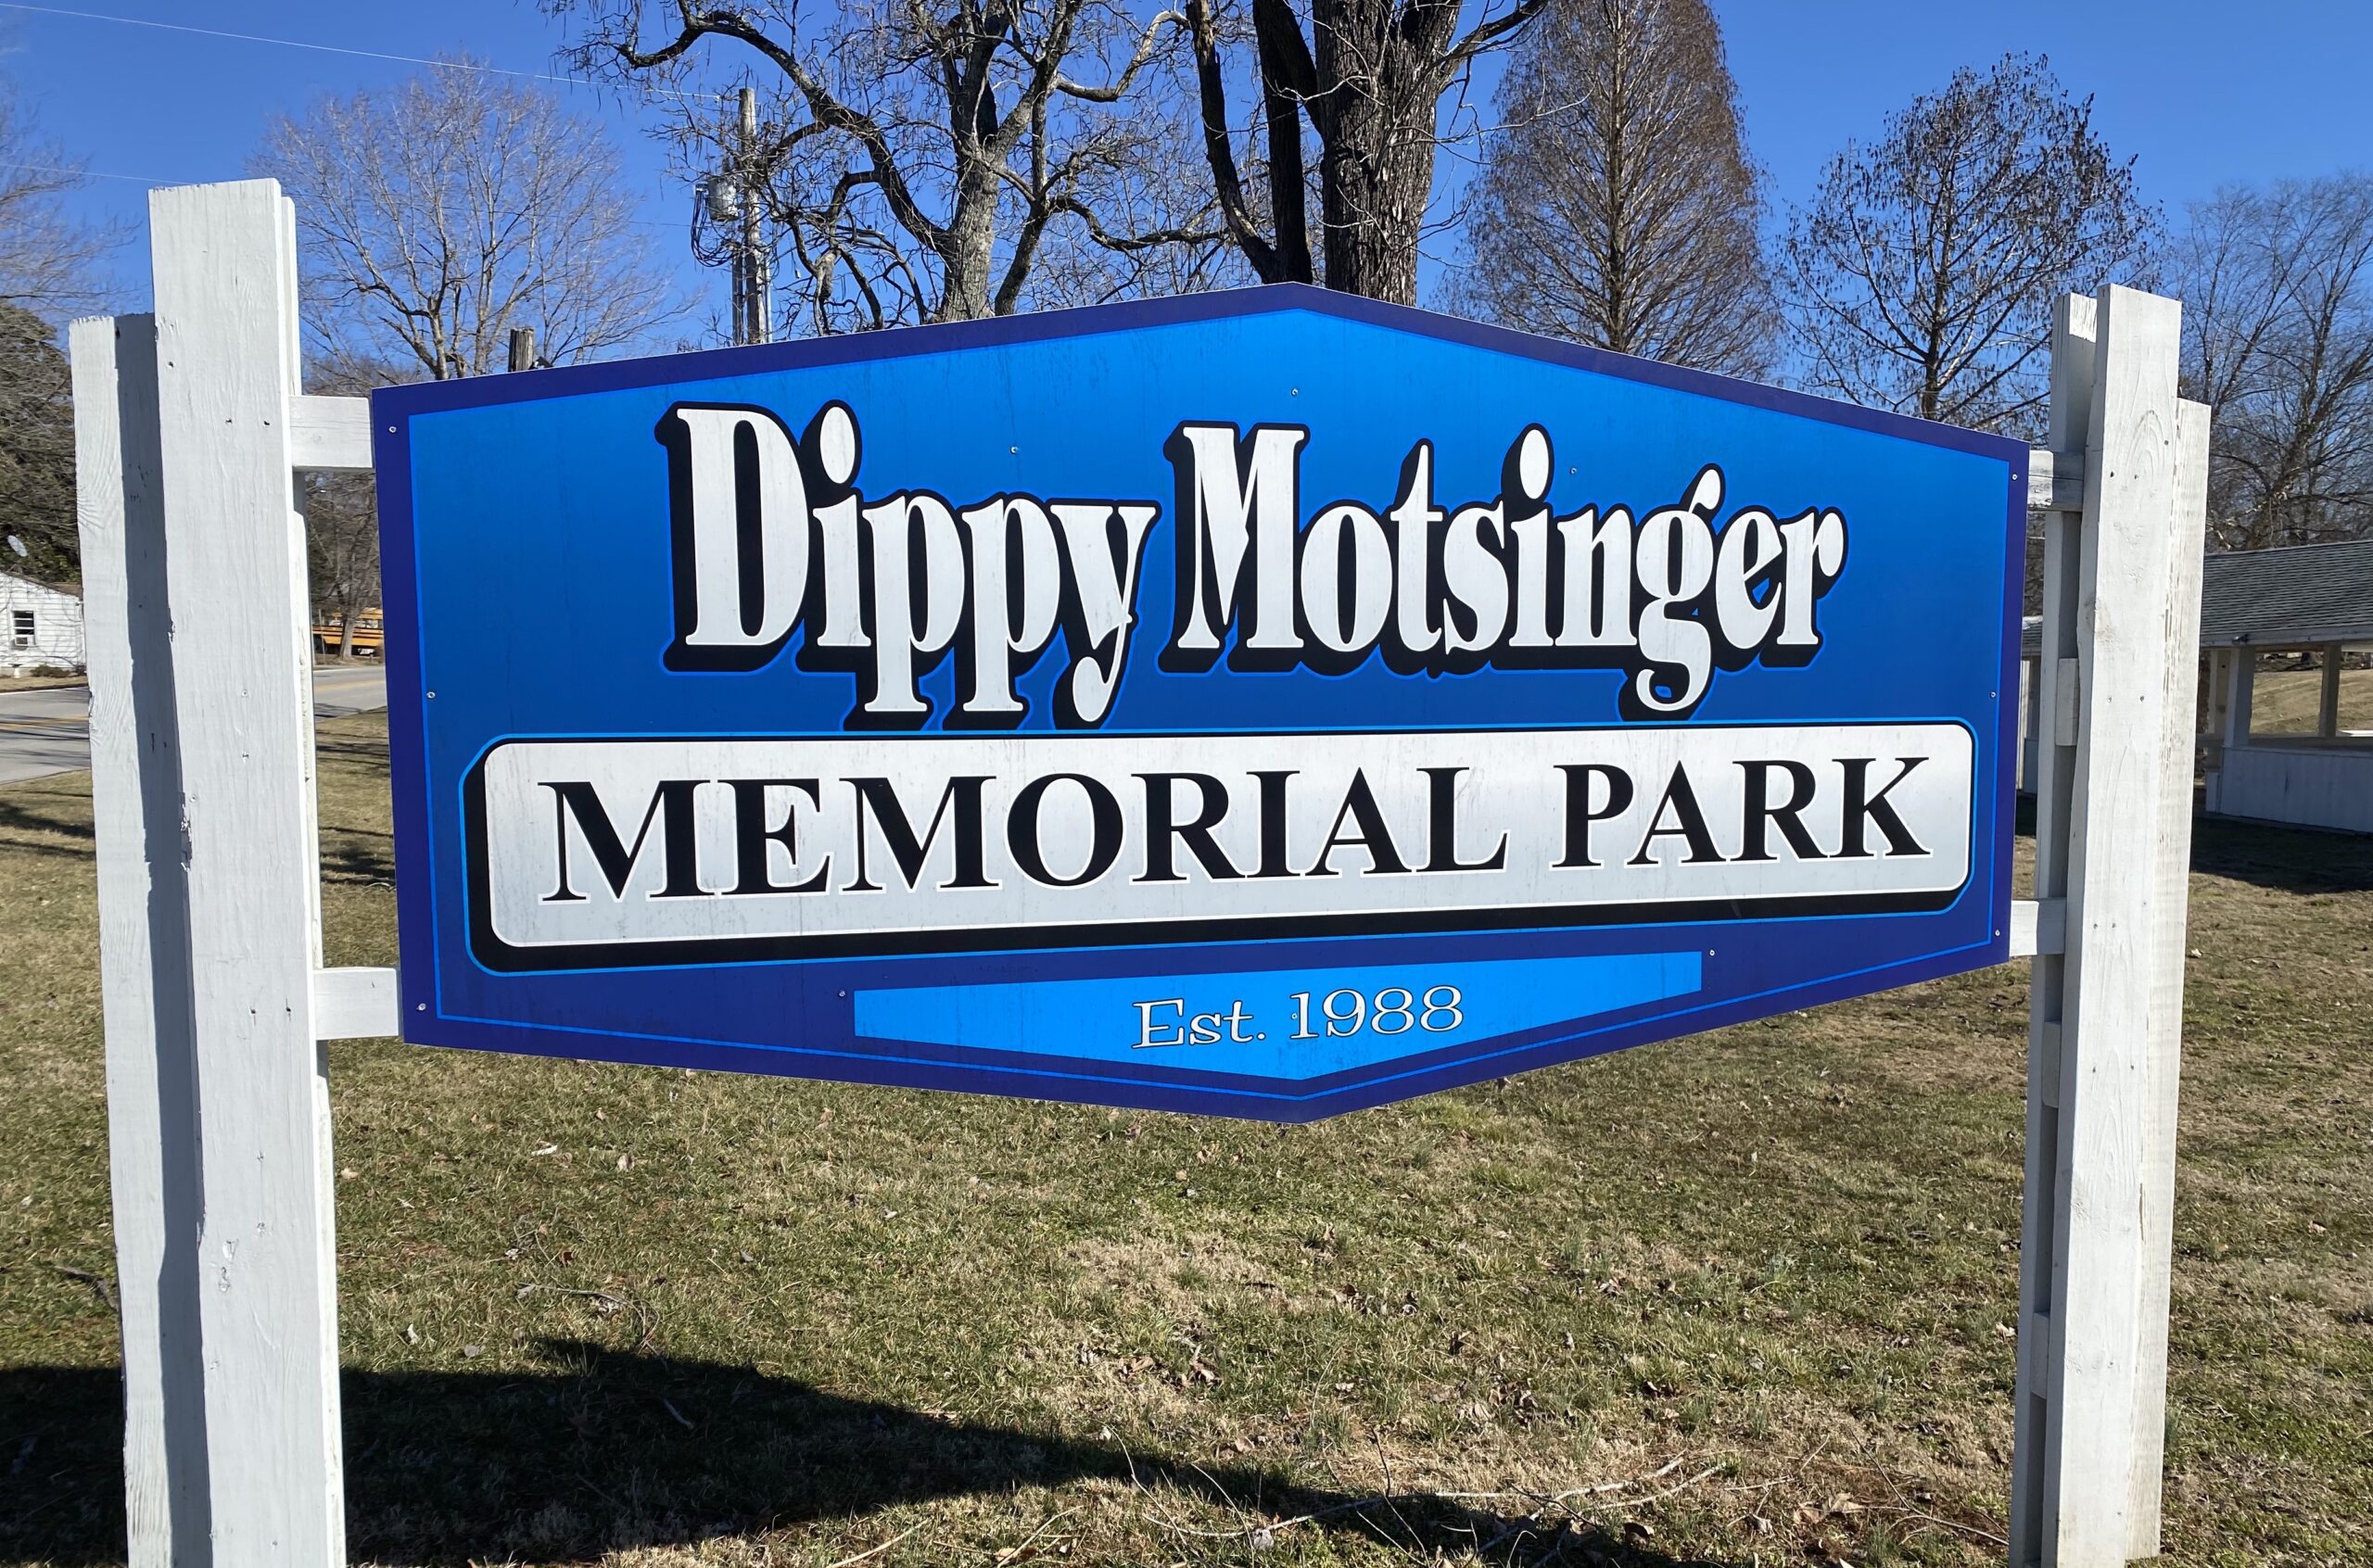 dippy-motsinger-memorial-park-sign-creal-springs-illinois